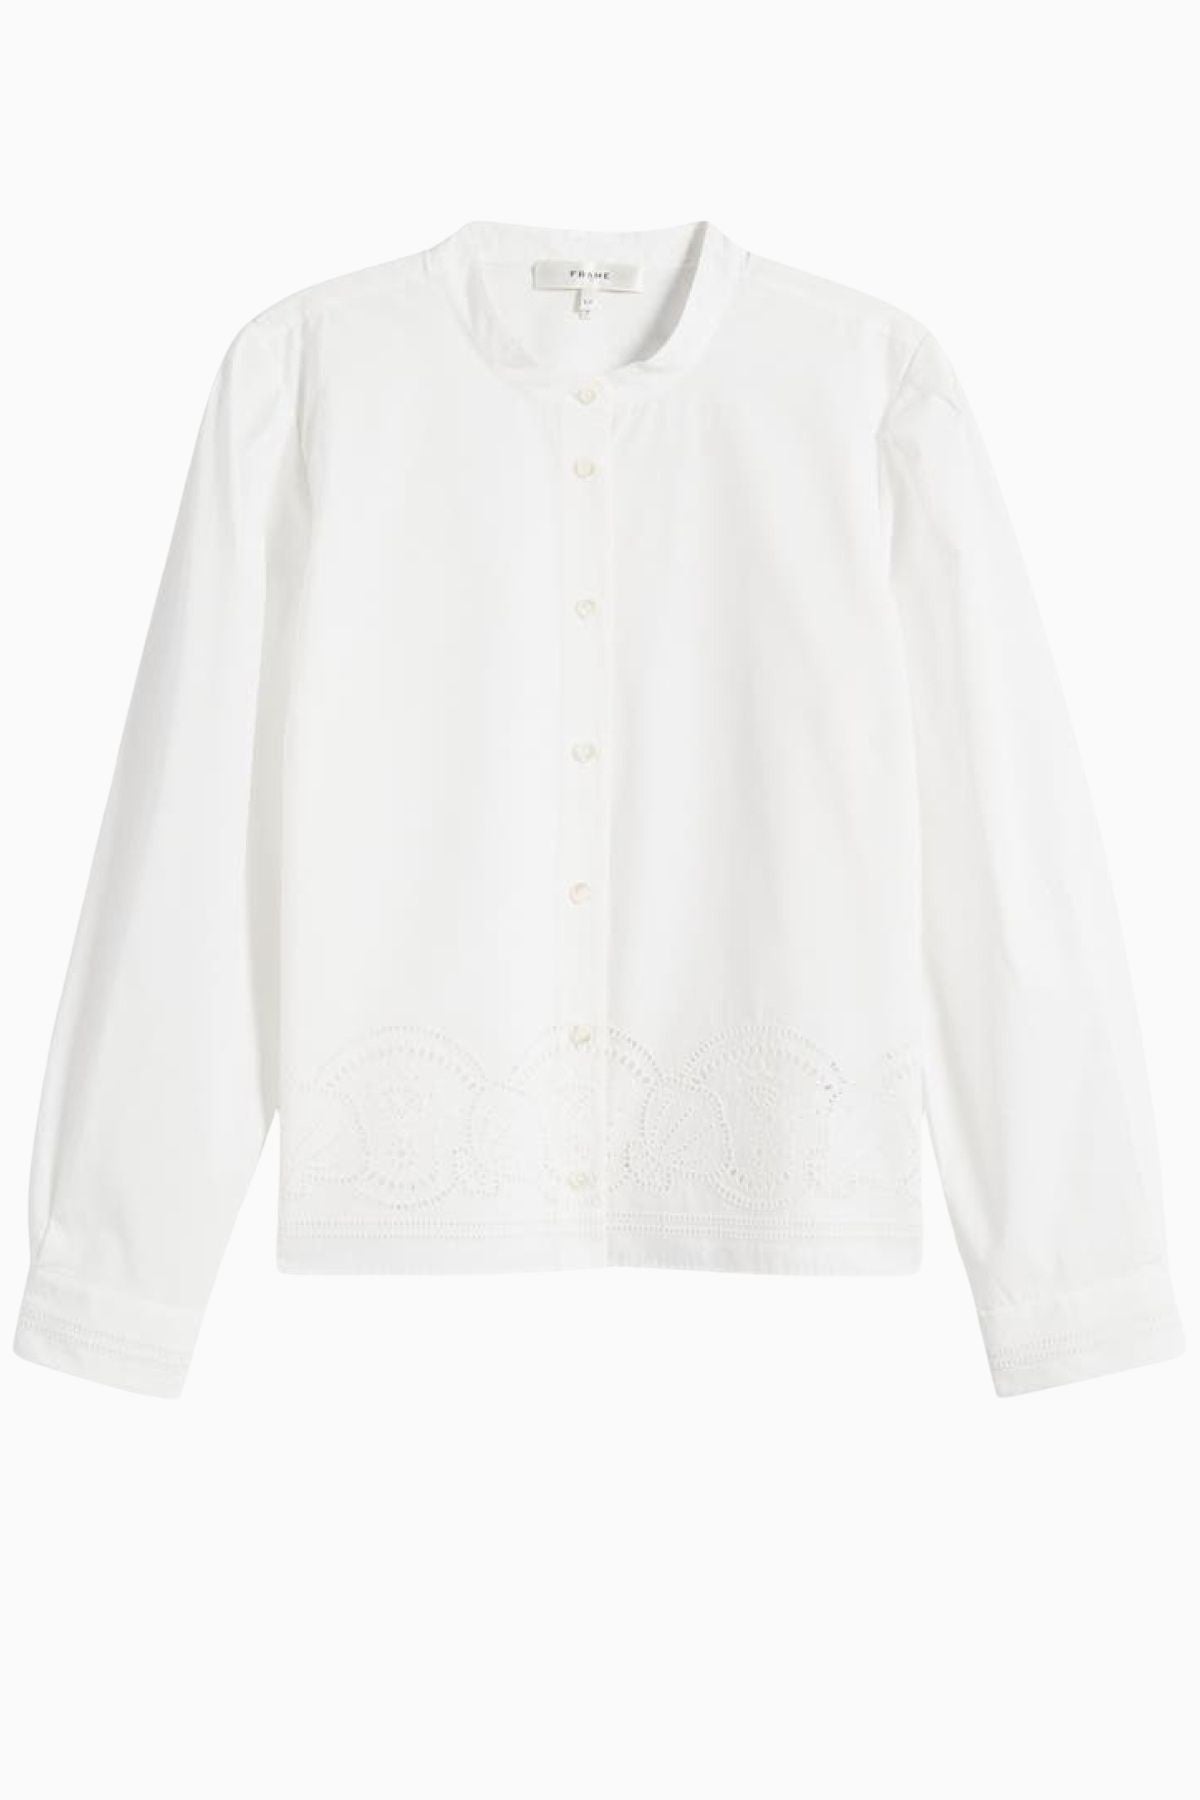 Frame Denim Embroidered Shirt - White